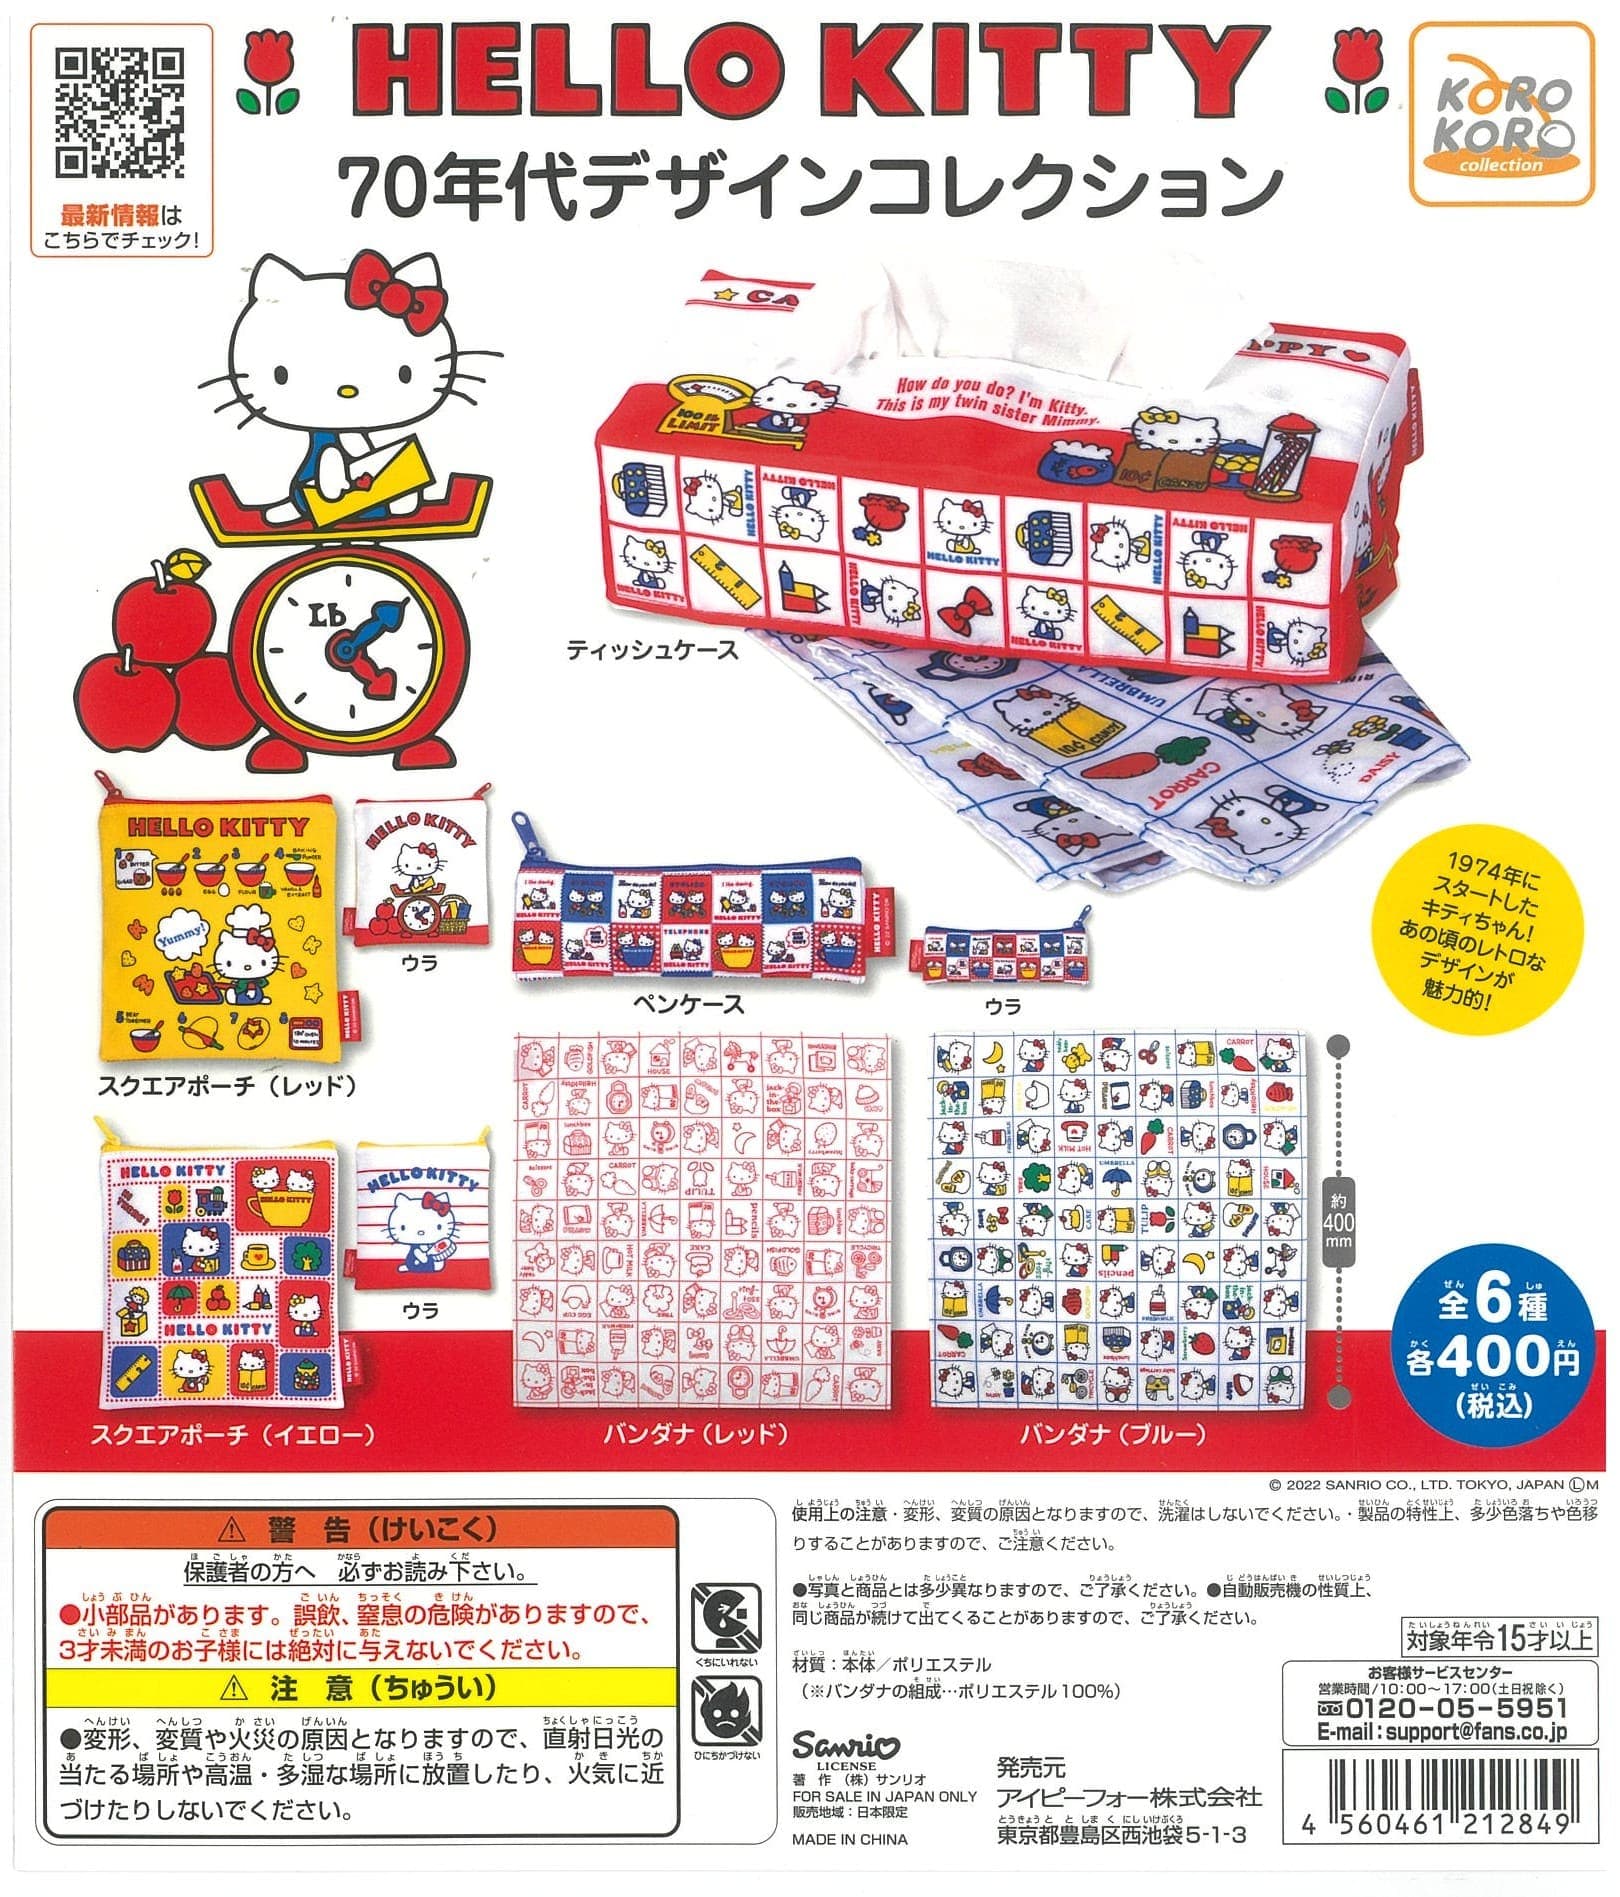 KoroKoro Collection CP2065 Hello Kitty 1970s Design Collection